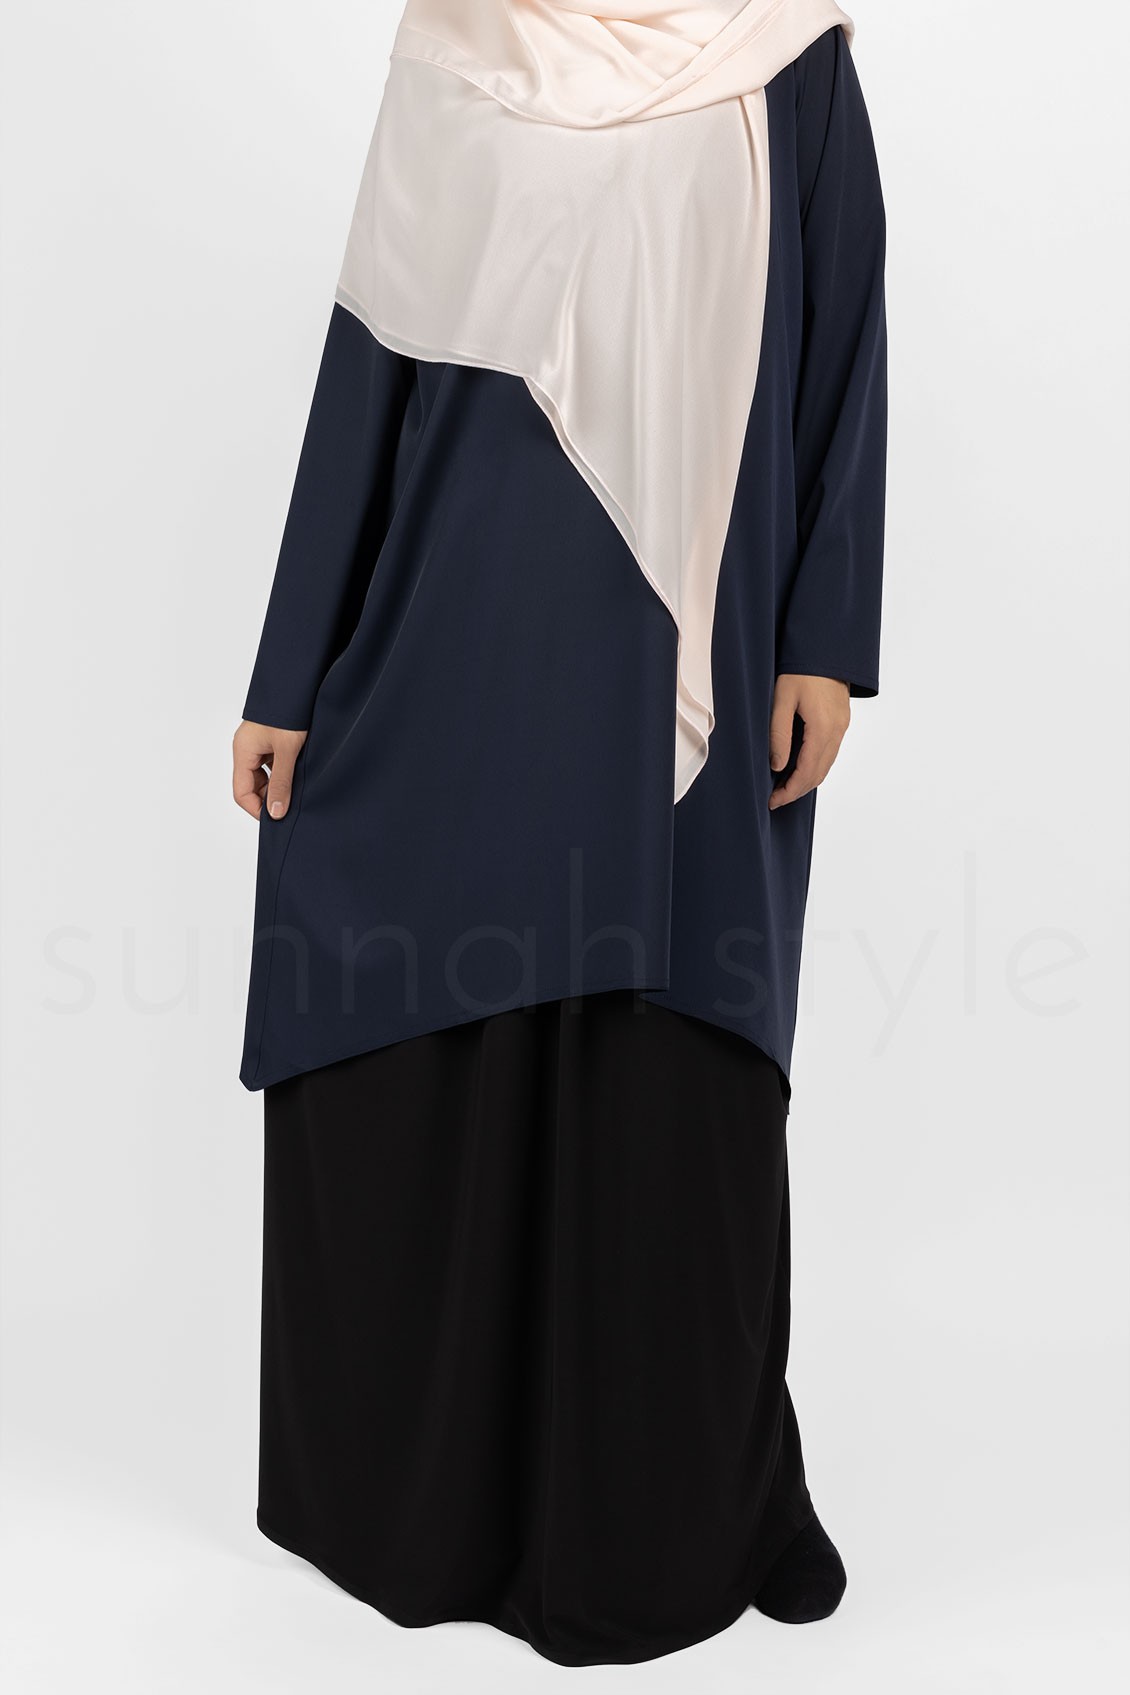 Sunnah Style Avant Abaya Top Navy Blue